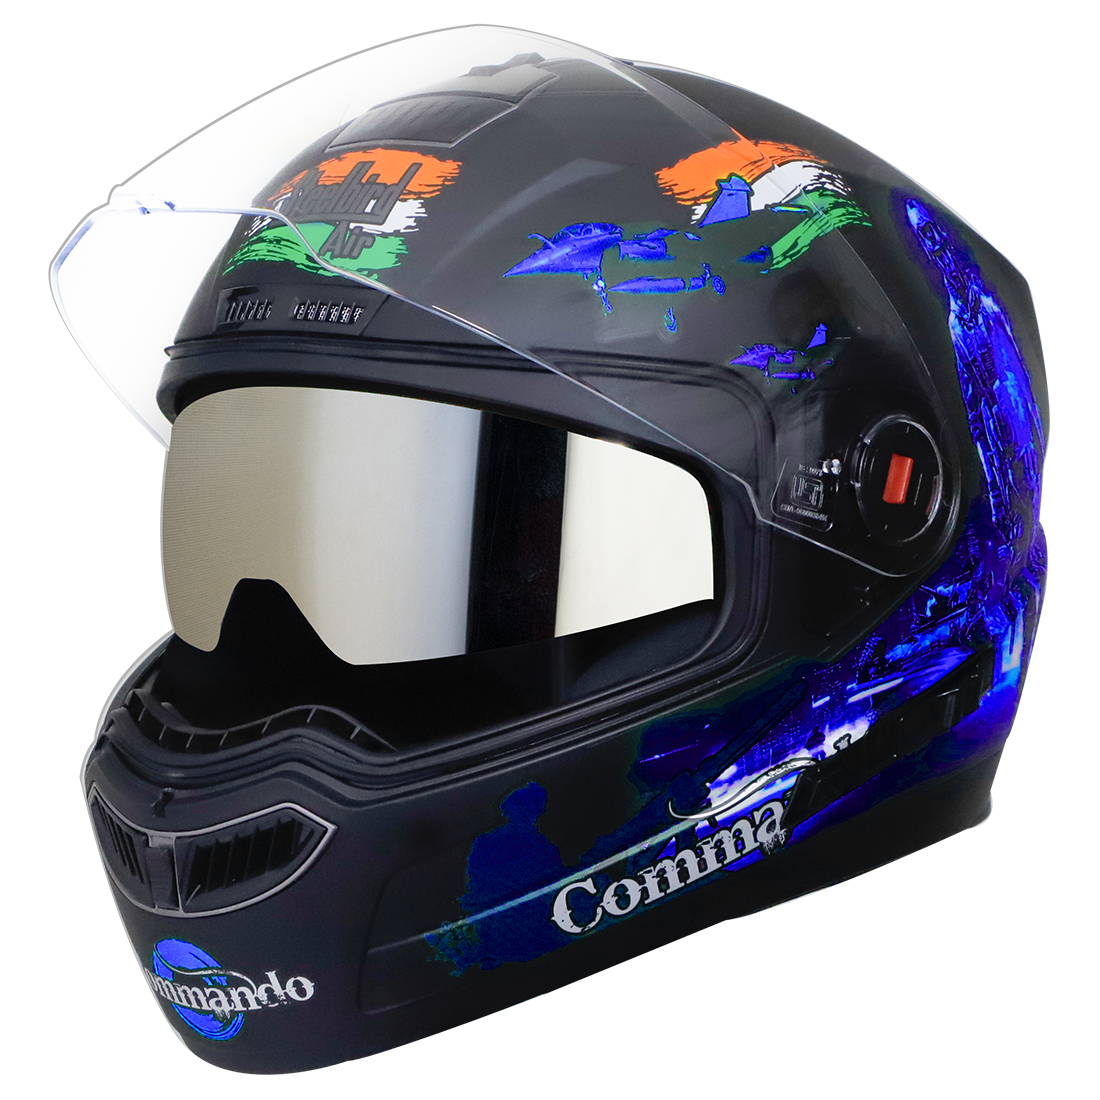 Steelbird SBA-1 Commando Double Visor Full Face Graphics Helmet, Inner Silver Sun Shield and Outer Clear Visor (Glossy Black Blue)